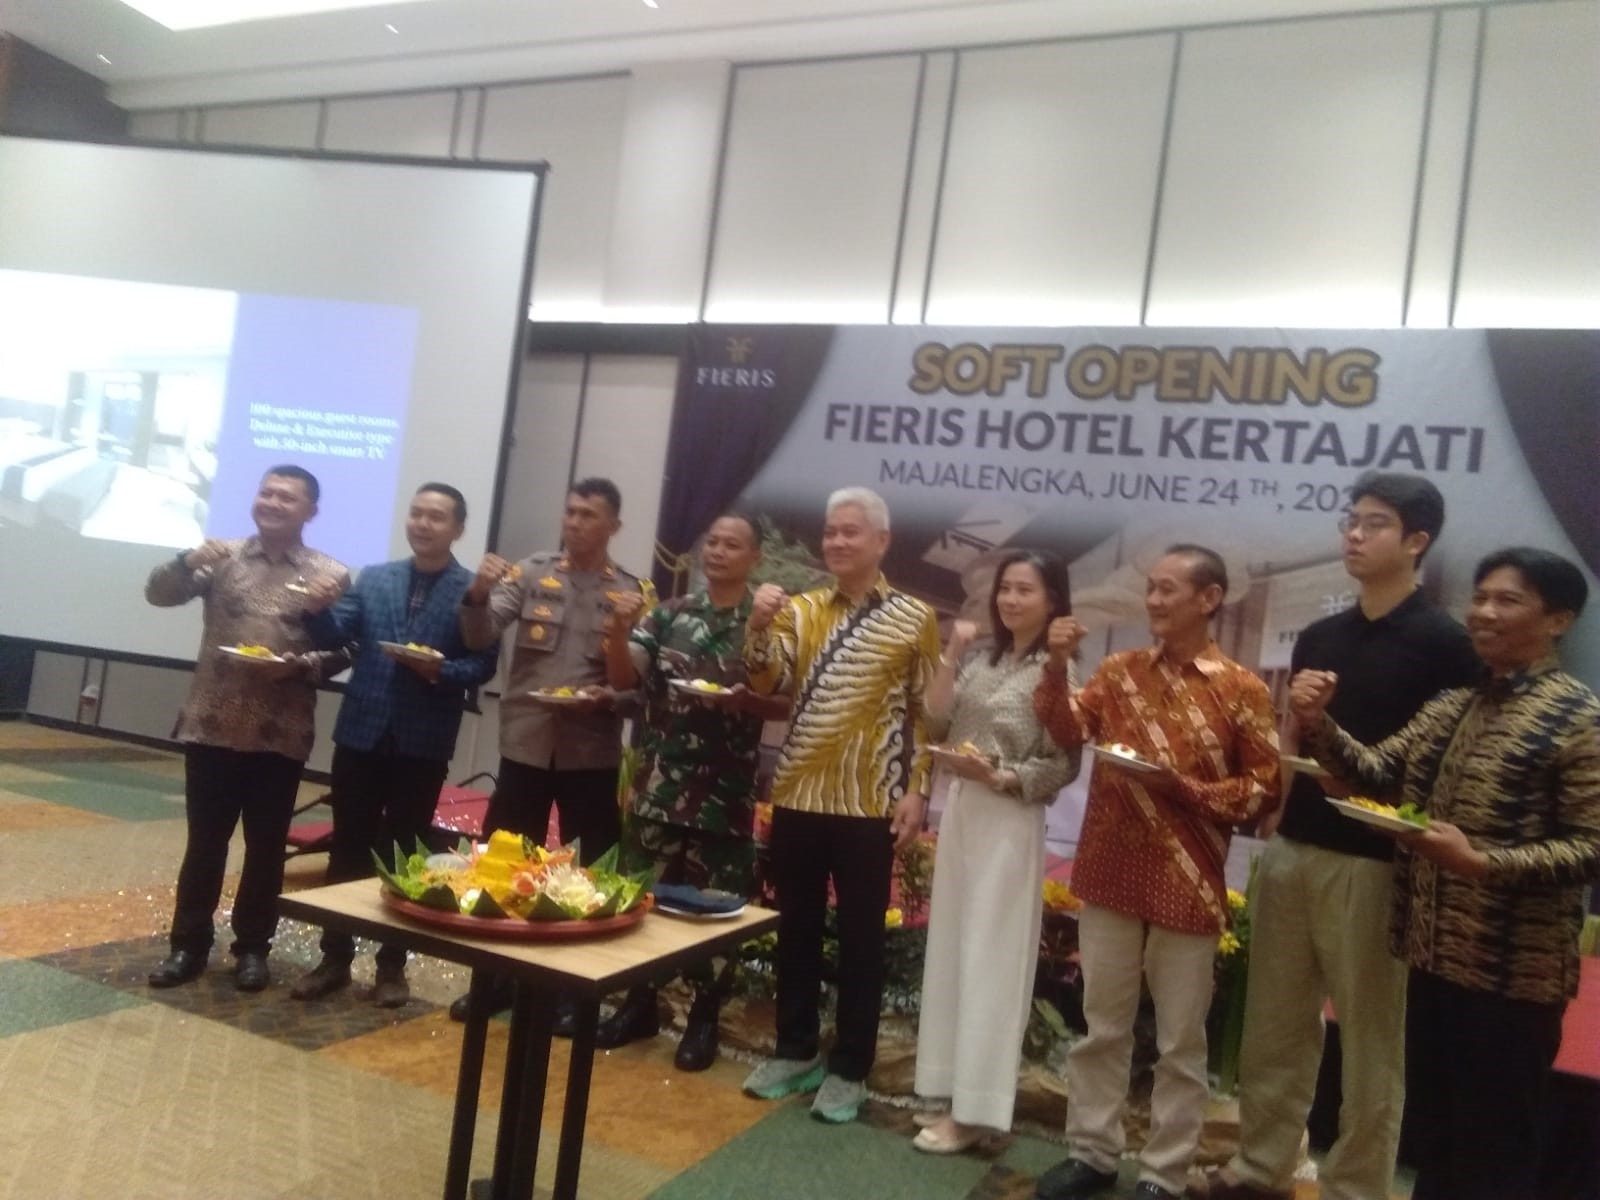  Fieris Hotel Kertajati, Hotel Bintang 3 Soft Opening di Kawasan Kertajati 